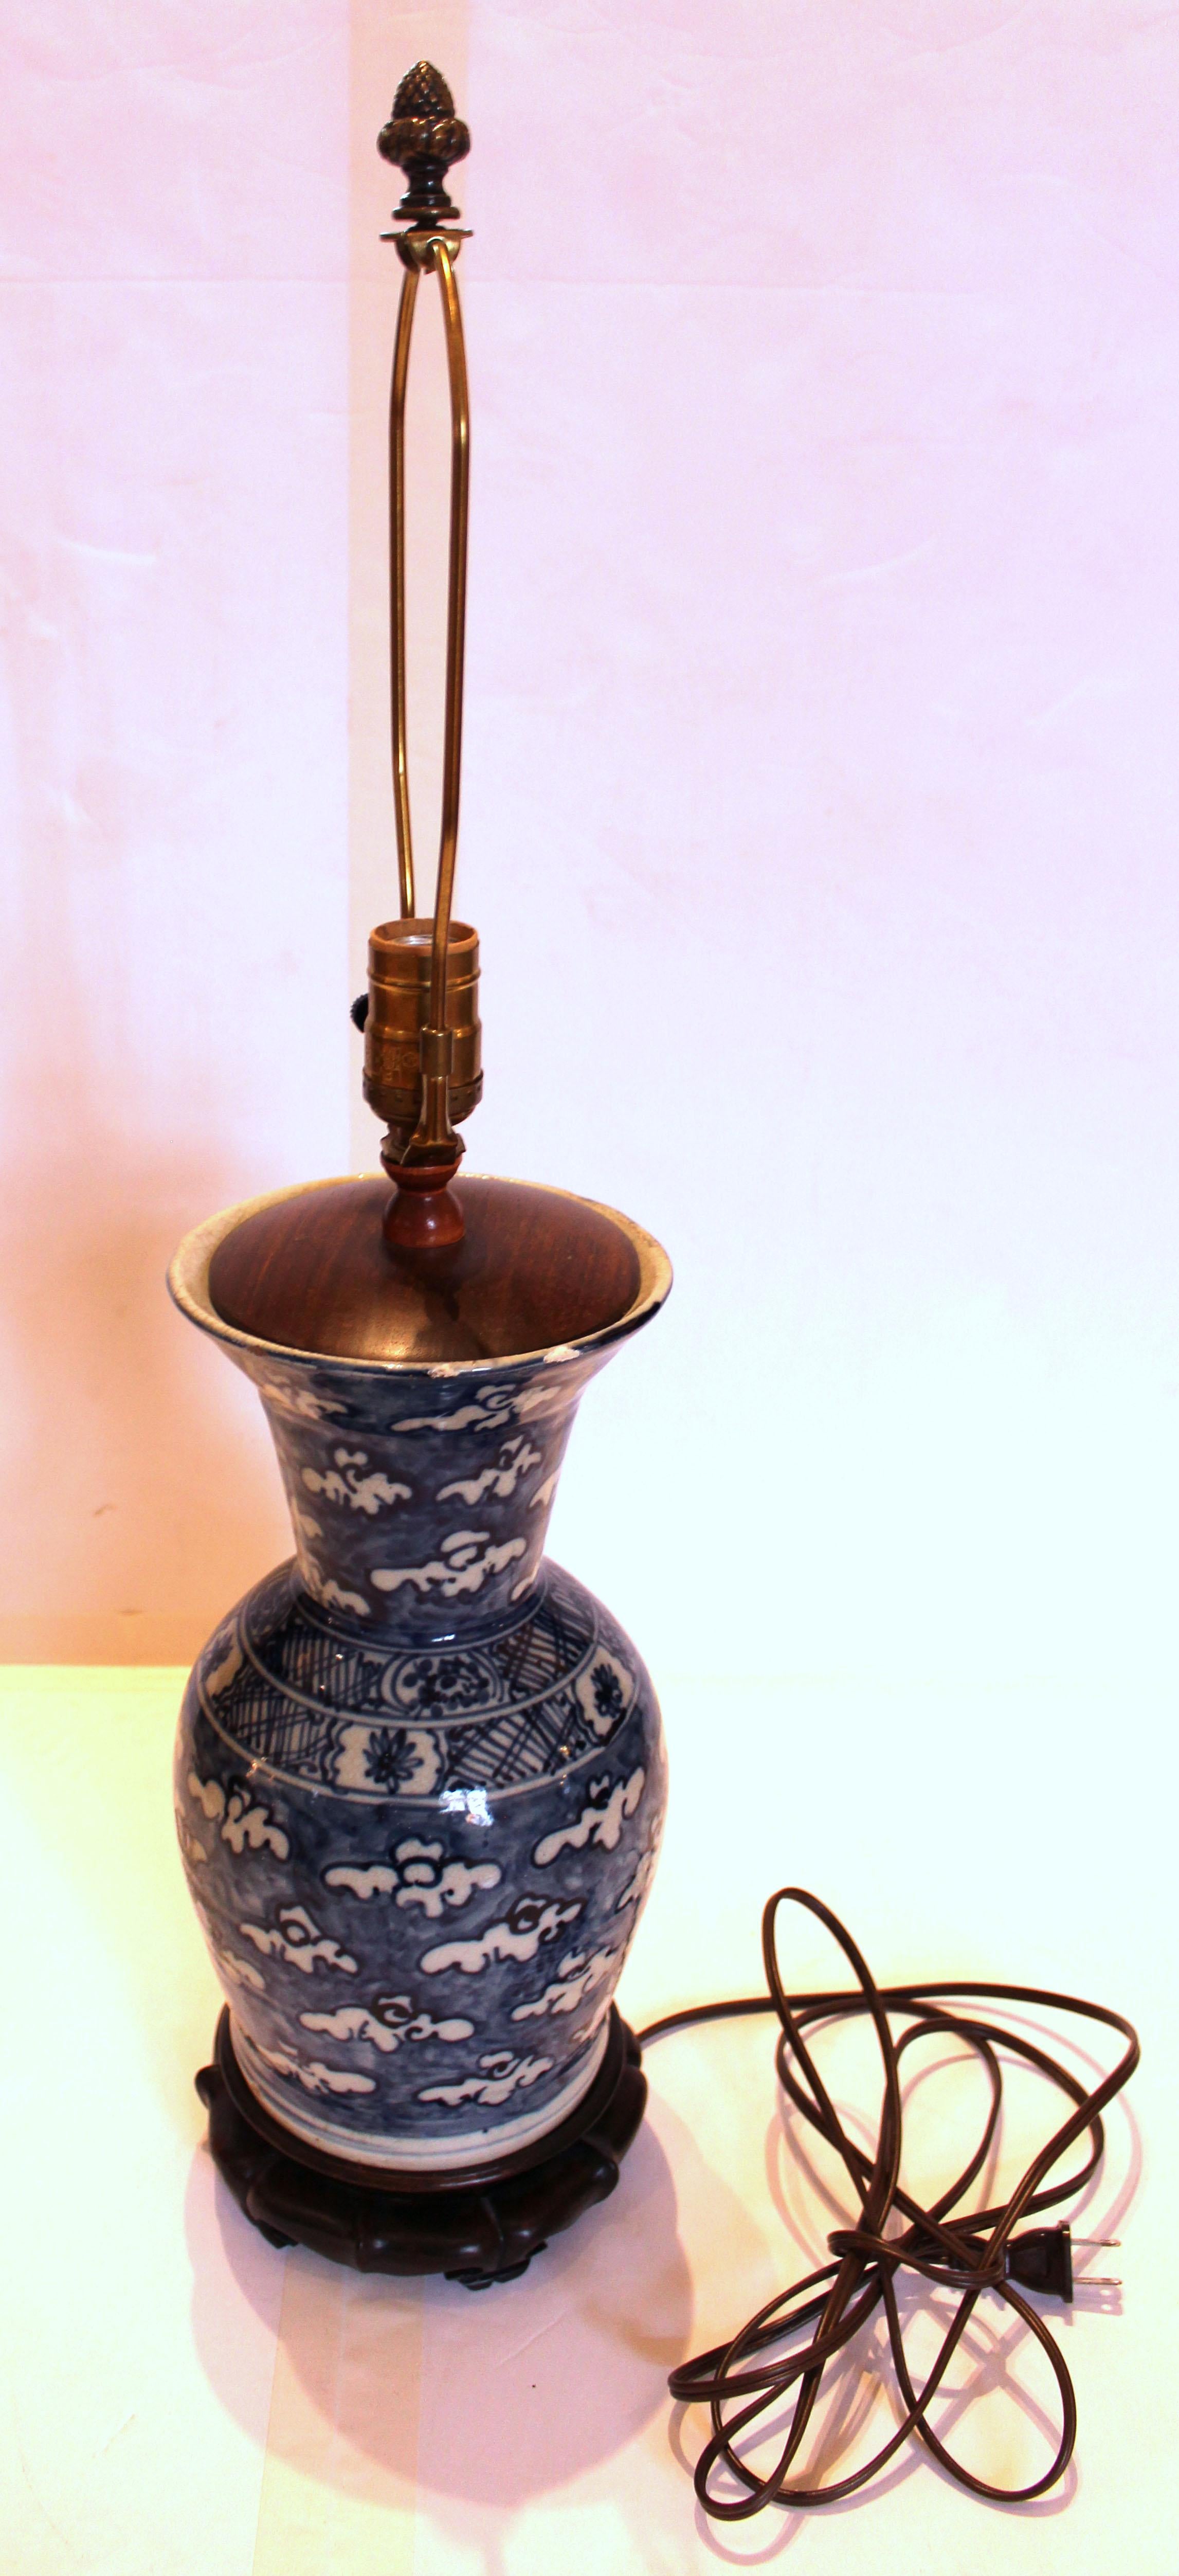 Lampe-vase chinoise bleu et blanc du milieu du 19e siècle. Le haut du vase en porcelaine de forme balustre présente des éclats mineurs et une zone restaurée, probablement la raison pour laquelle il a été transformé en lampe. Décor de nuages flottant